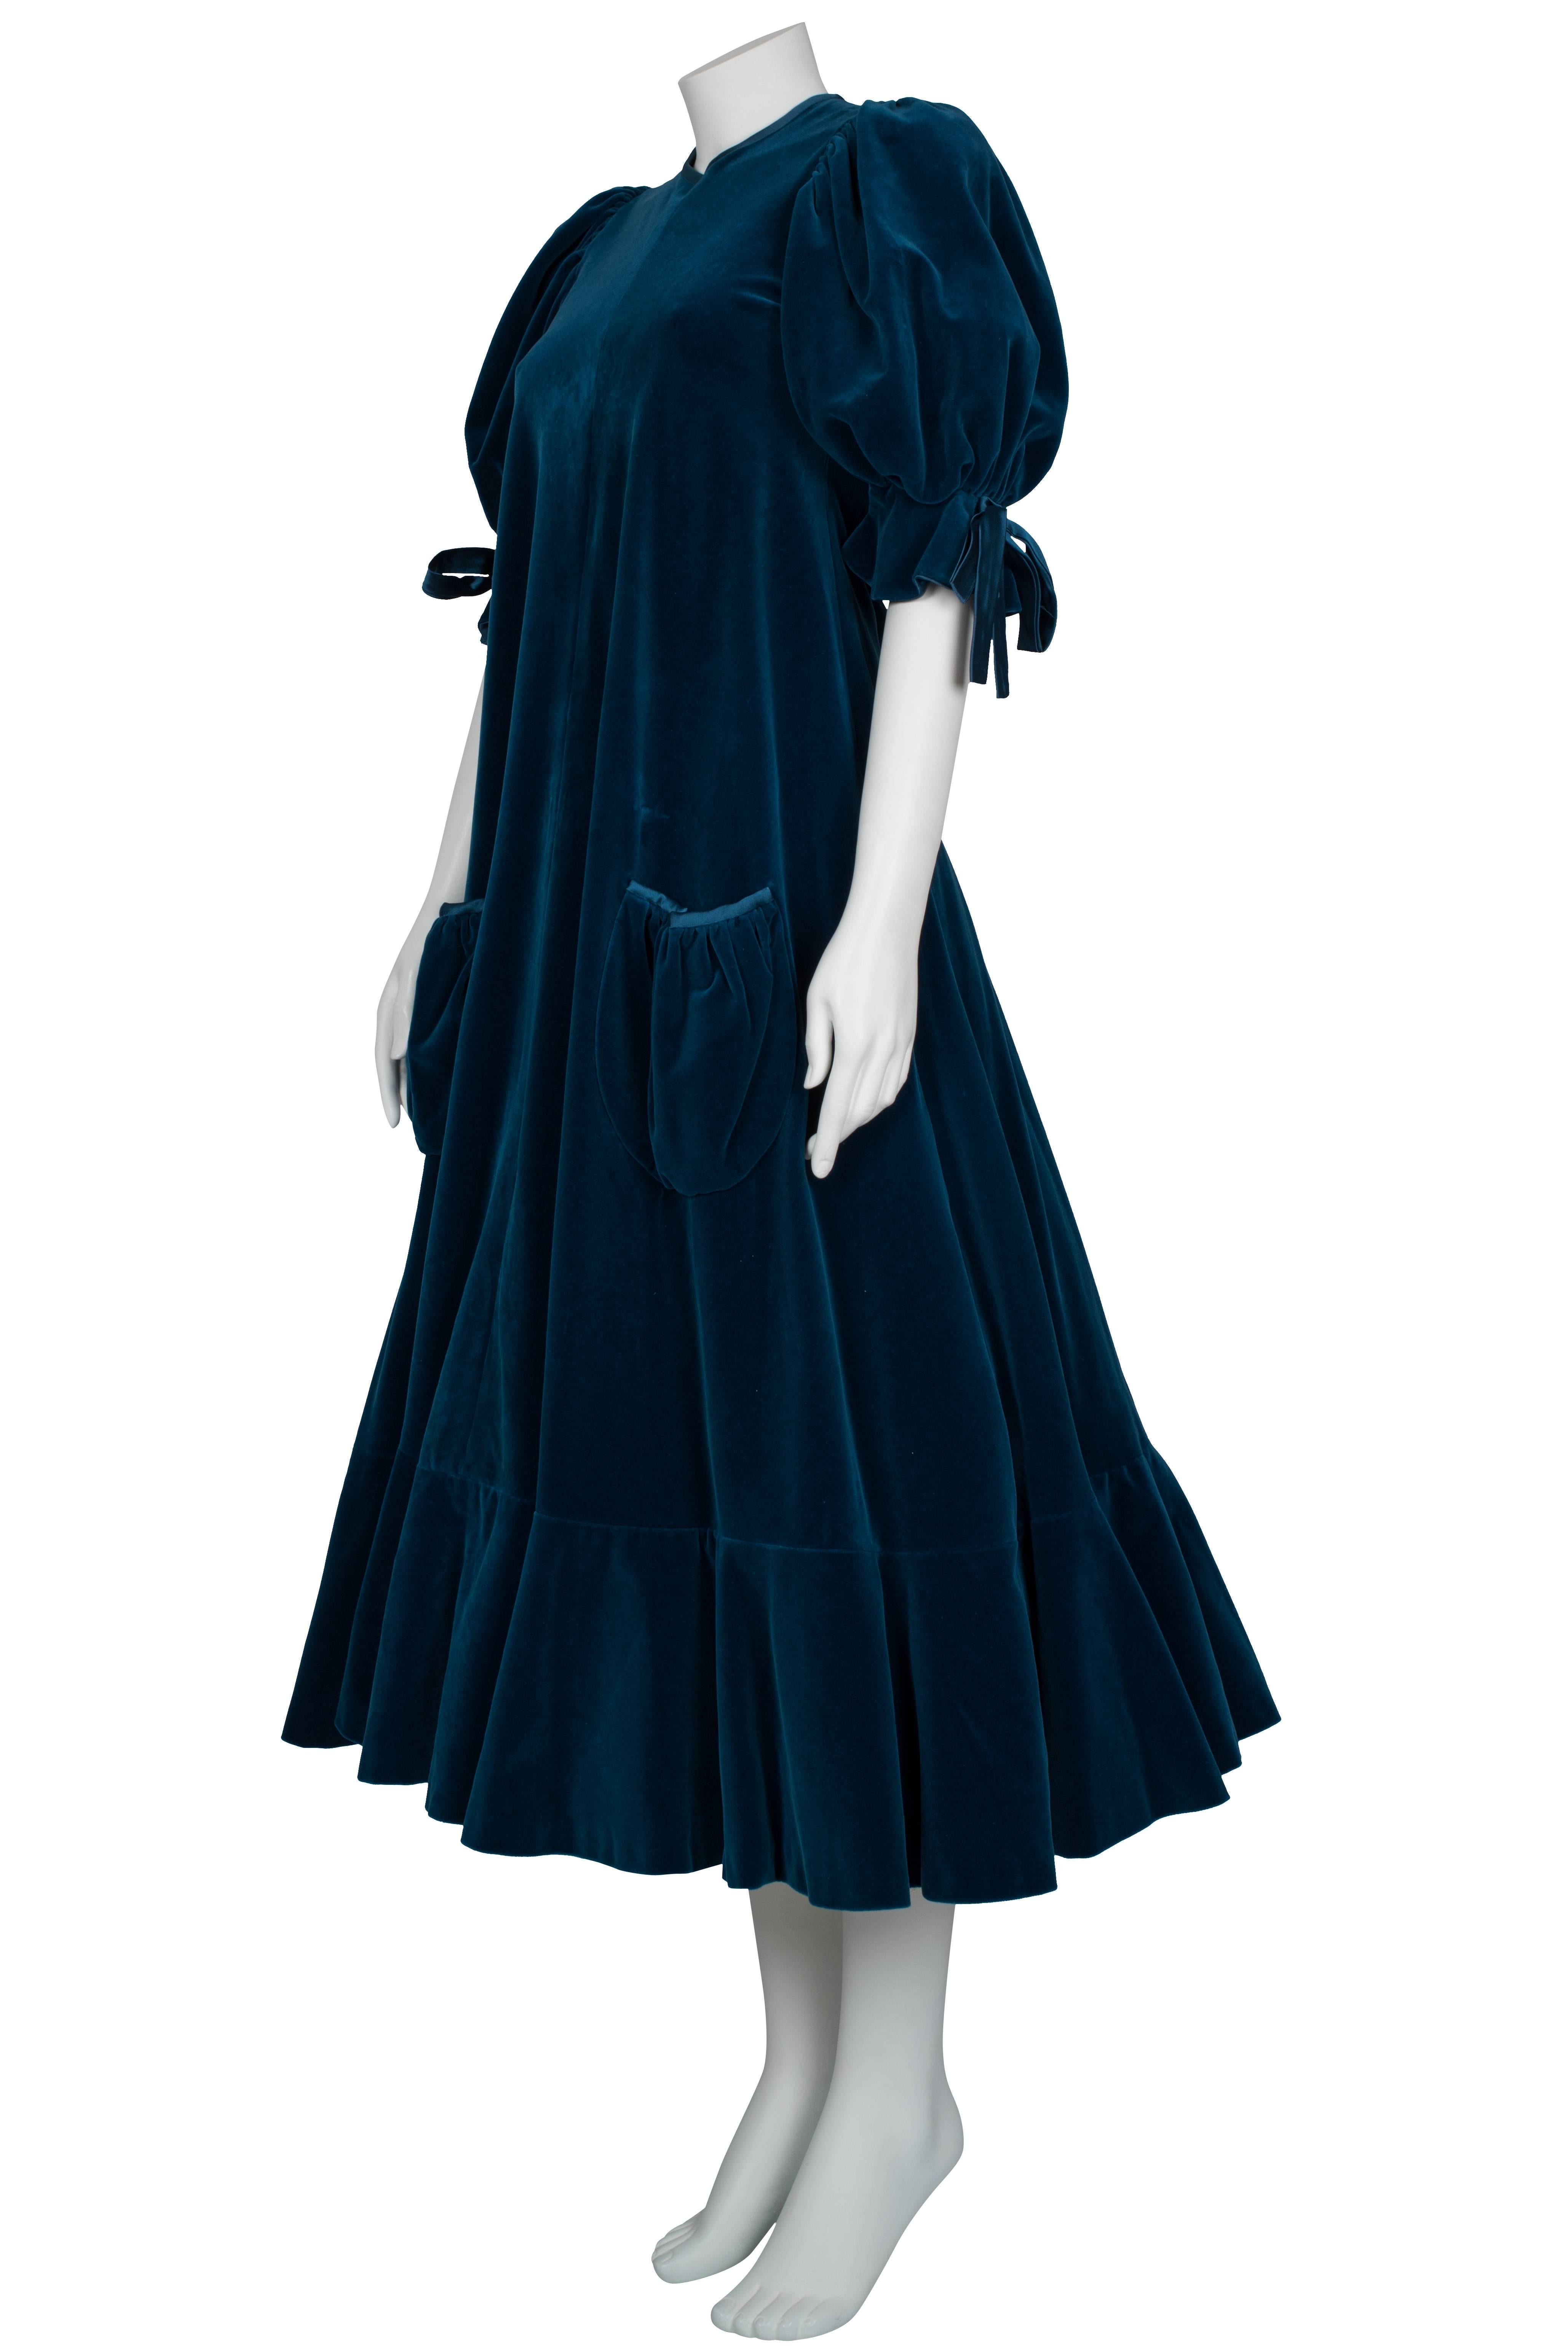 Women's Gina Fratini blue velvet puff sleeve dress ca 1970